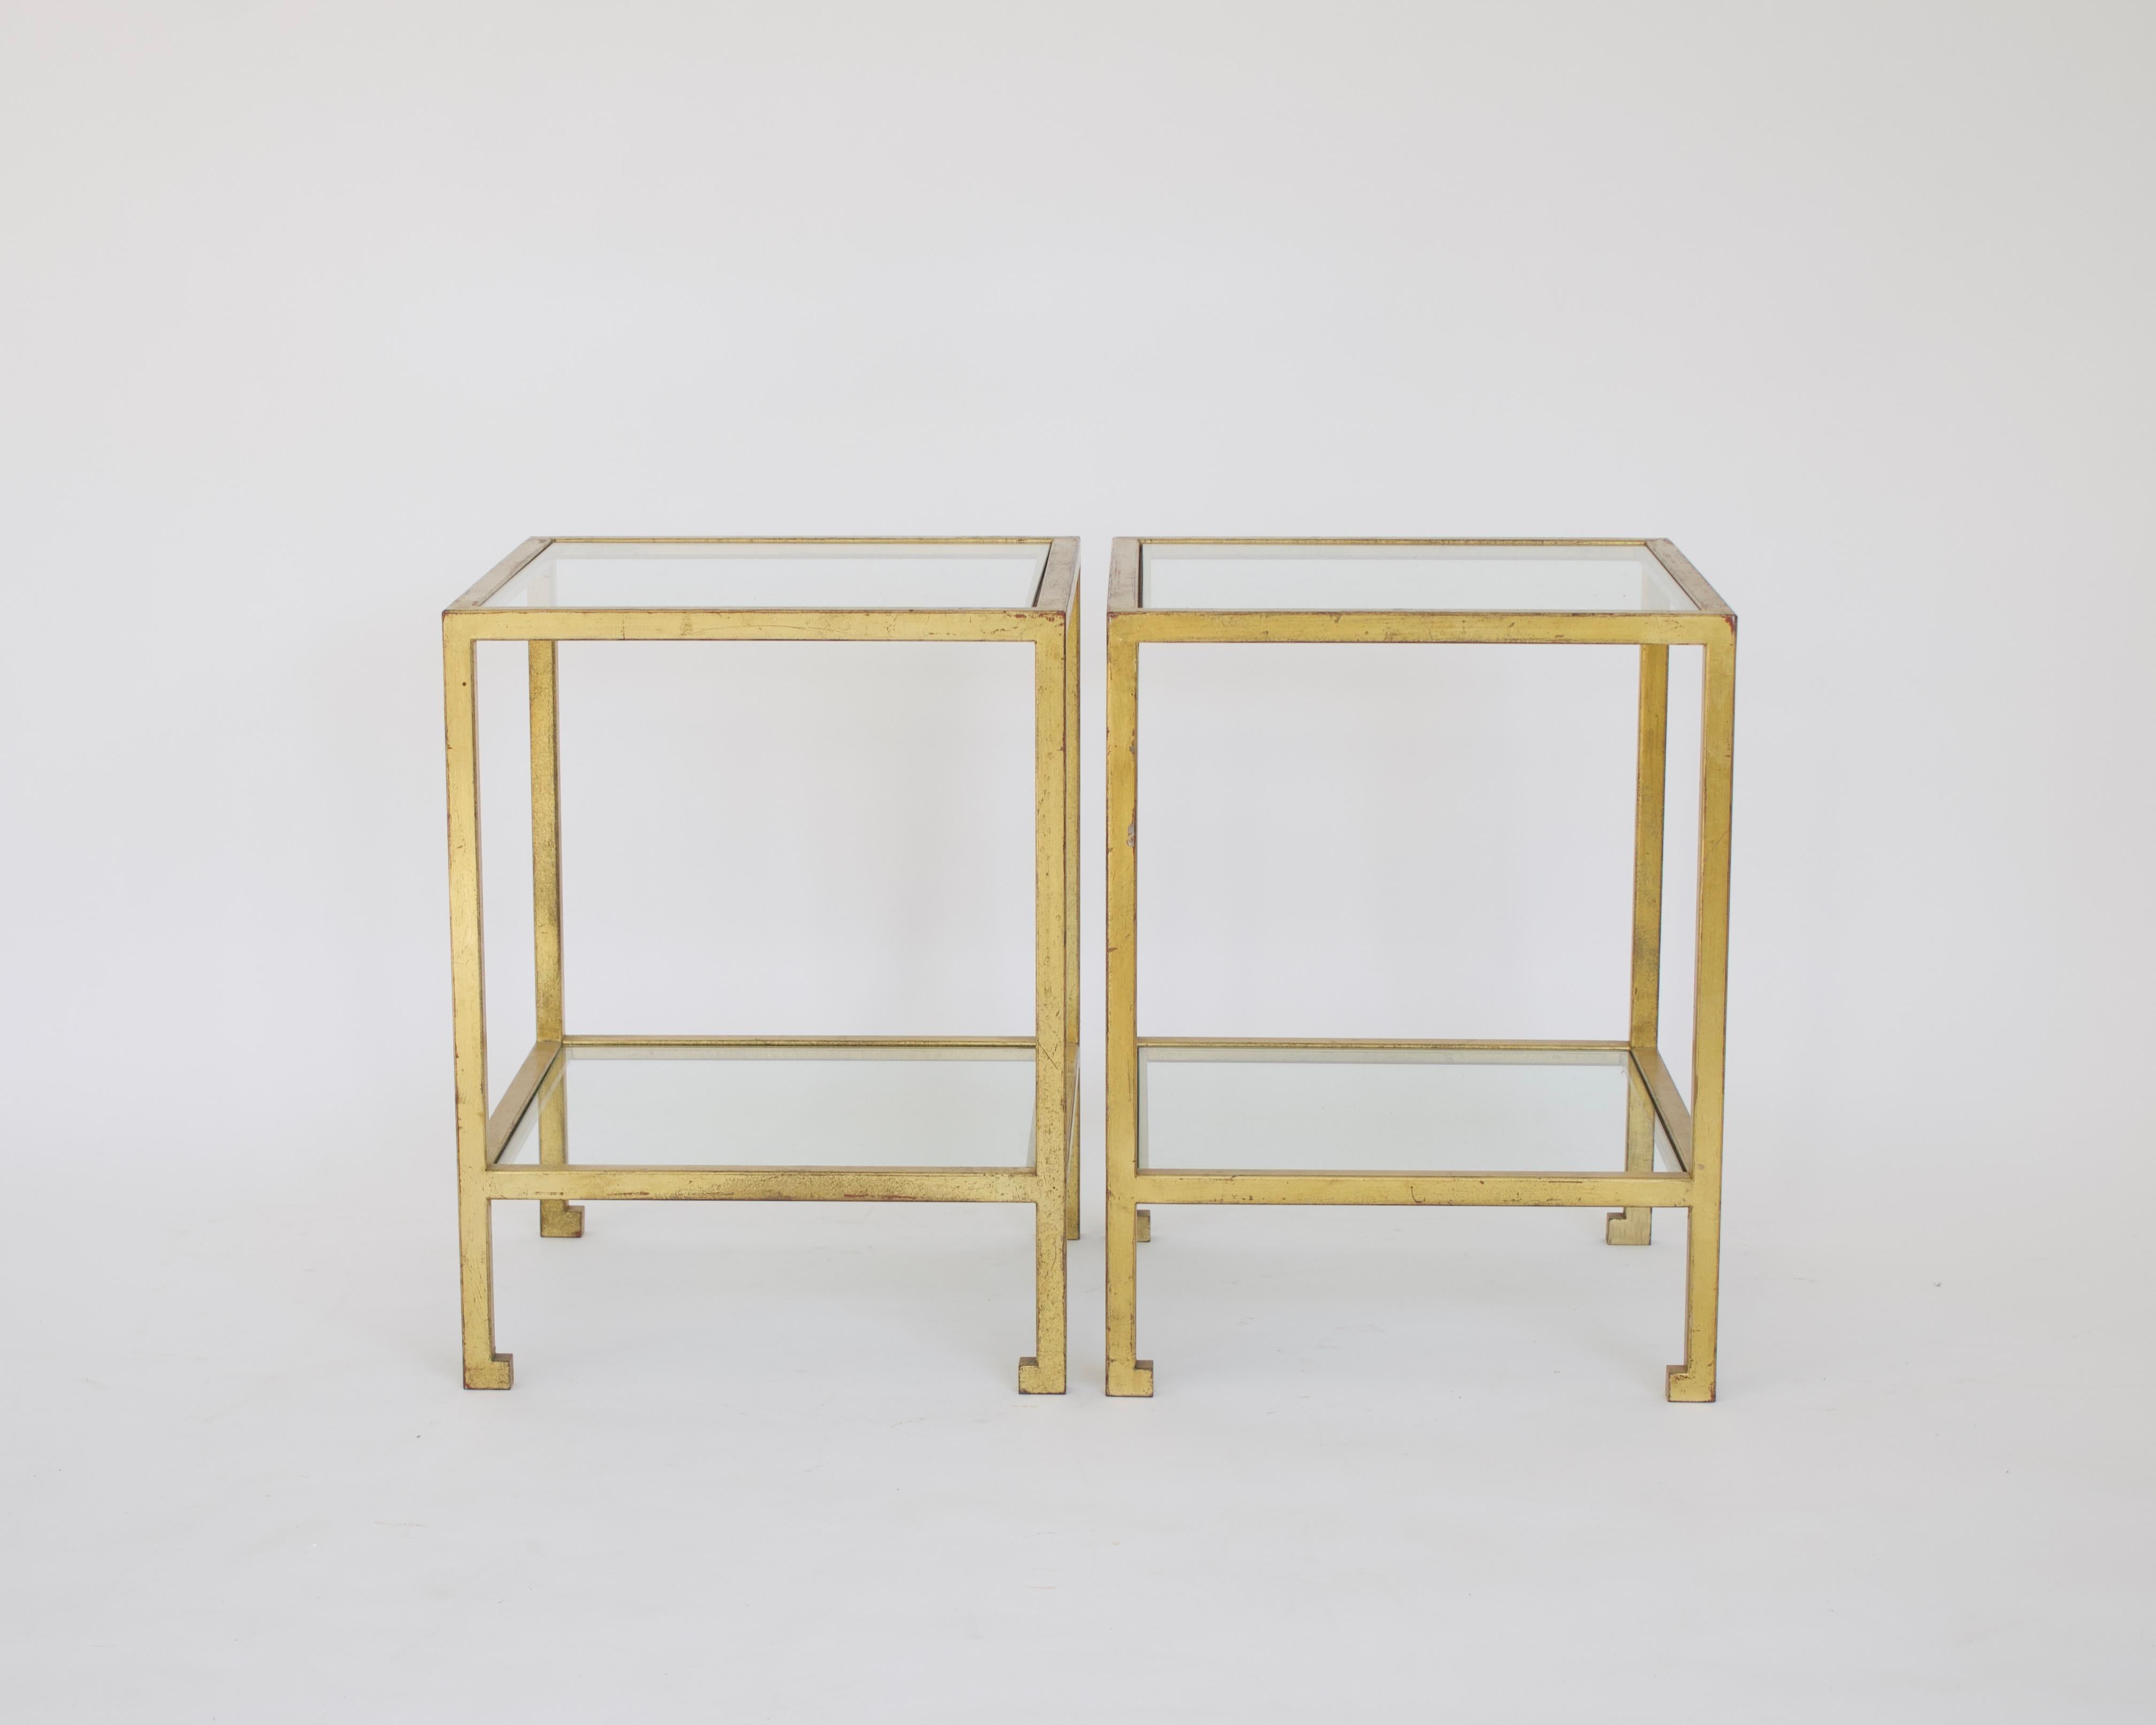 Roger Thibier Französisch vergoldetes Schmiedeeisen zwei Ebene Seite oder Ende Tabellen mit Neo klassischen Füße. 
Die Gesamthöhe beträgt 20,5